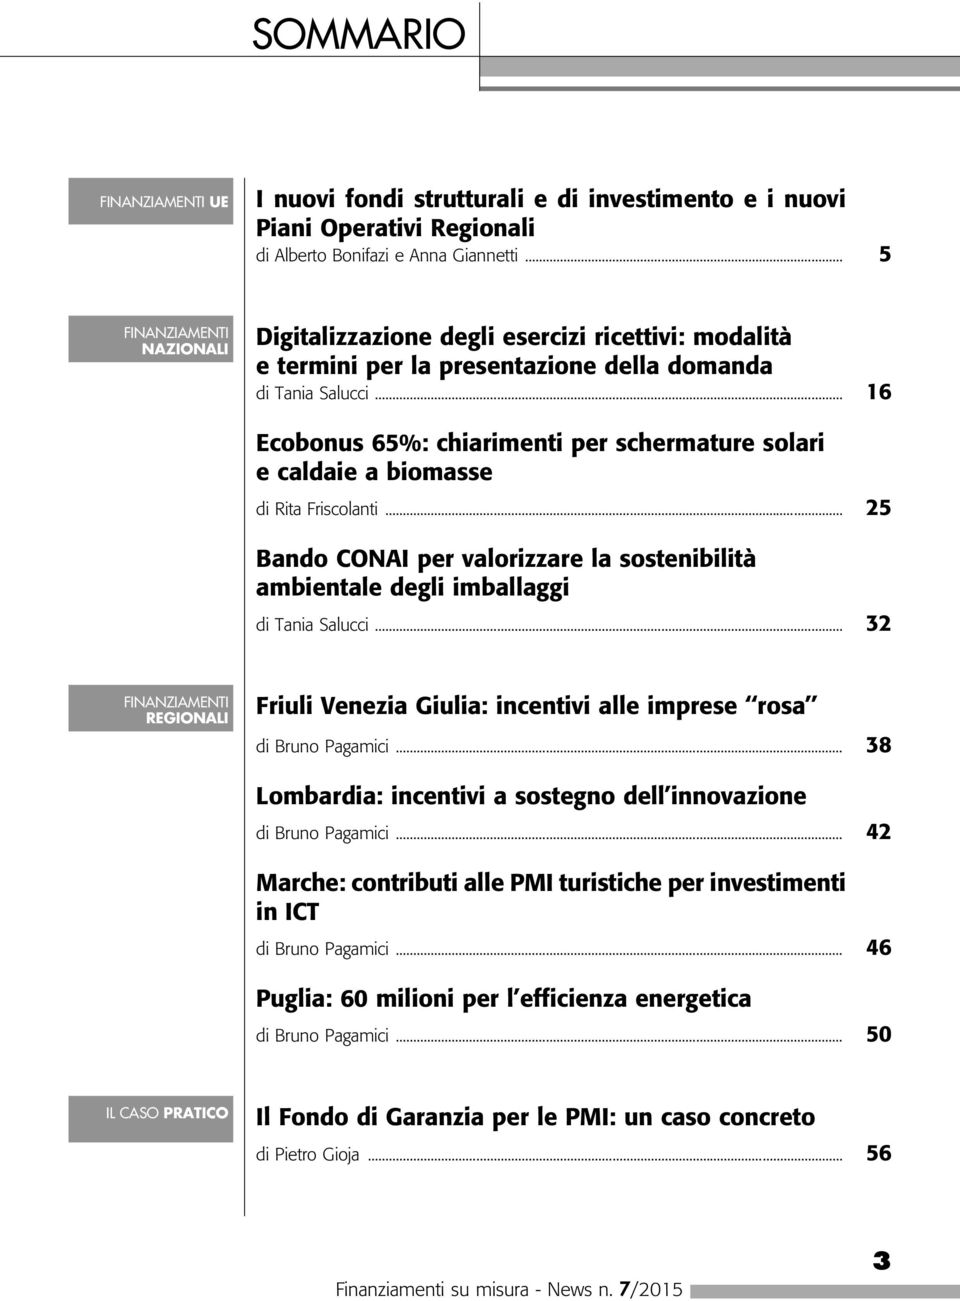 .. 16 Ecobonus 65%: chiarimenti per schermature solari e caldaie a biomasse di Rita Friscolanti... 25 Bando CONAI per valorizzare la sostenibilità ambientale degli imballaggi di Tania Salucci.